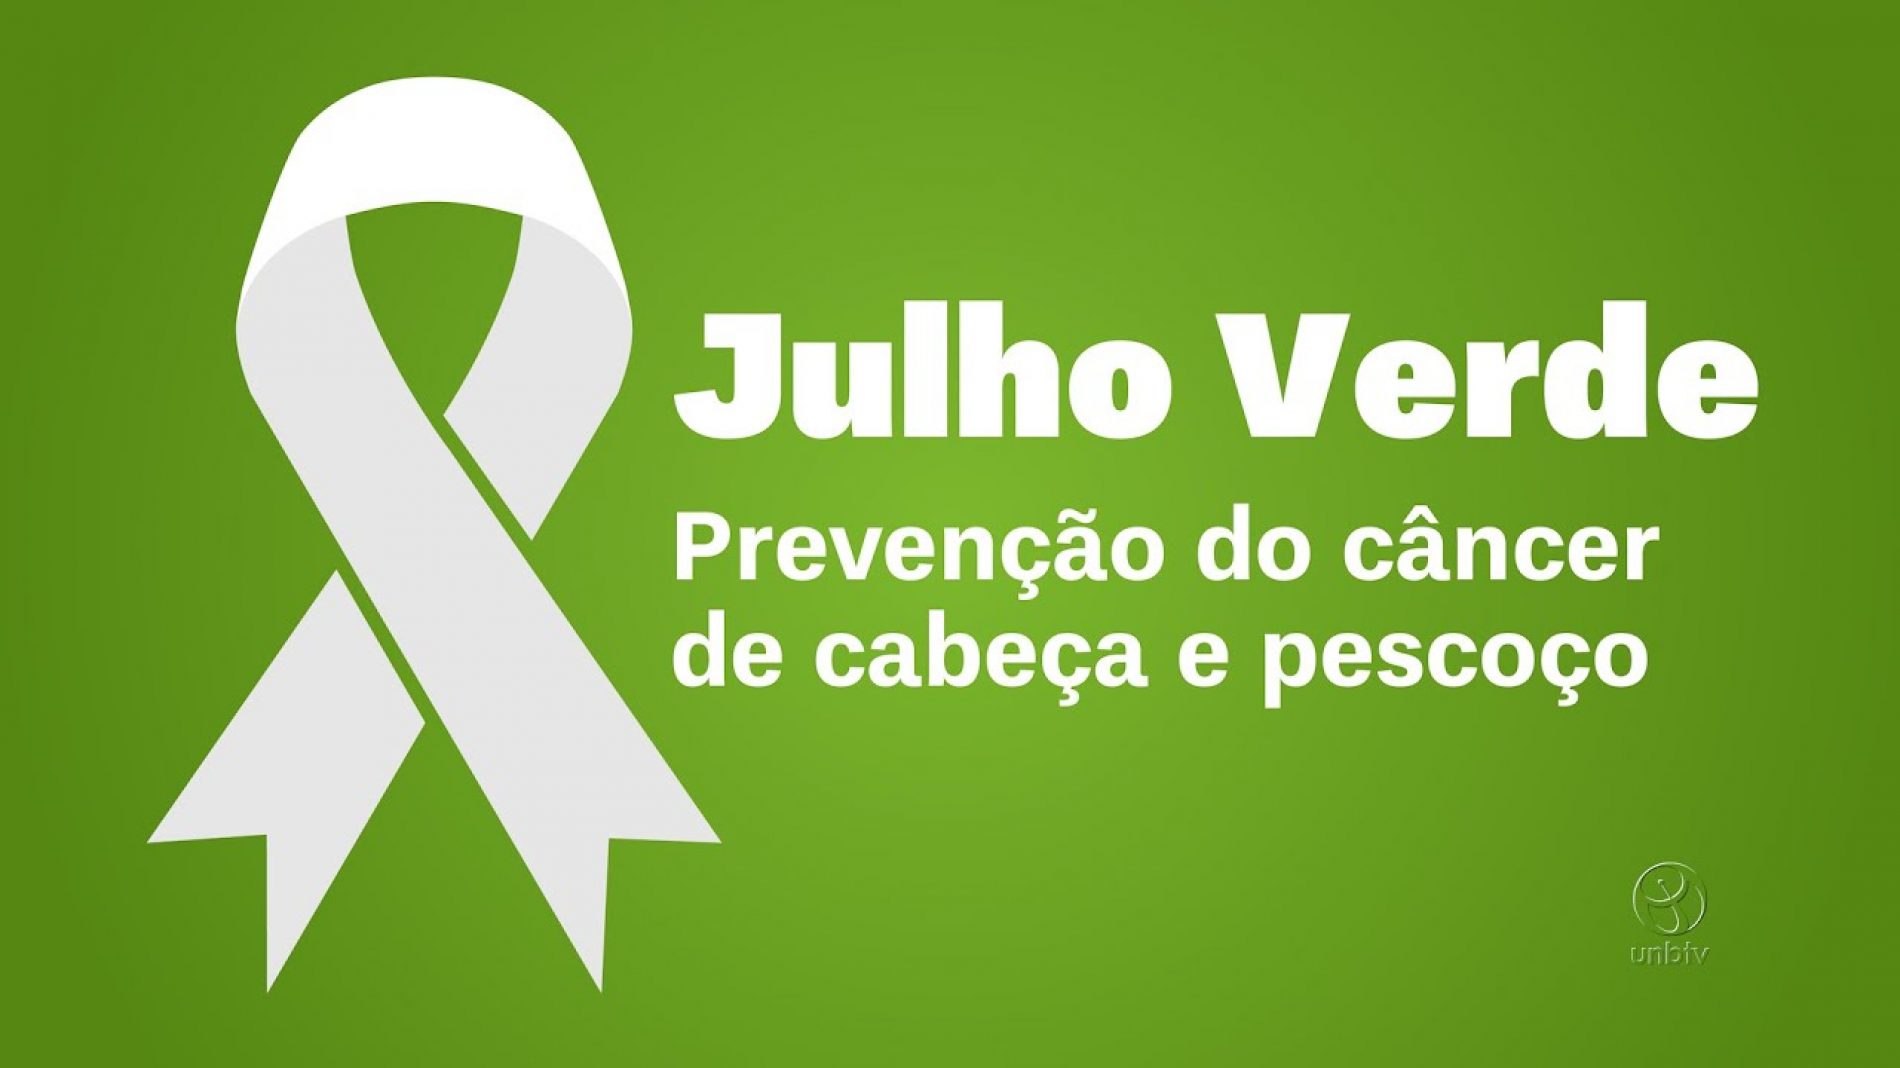 Julho Verde alerta para prevenção ao câncer de cabeça e pescoço